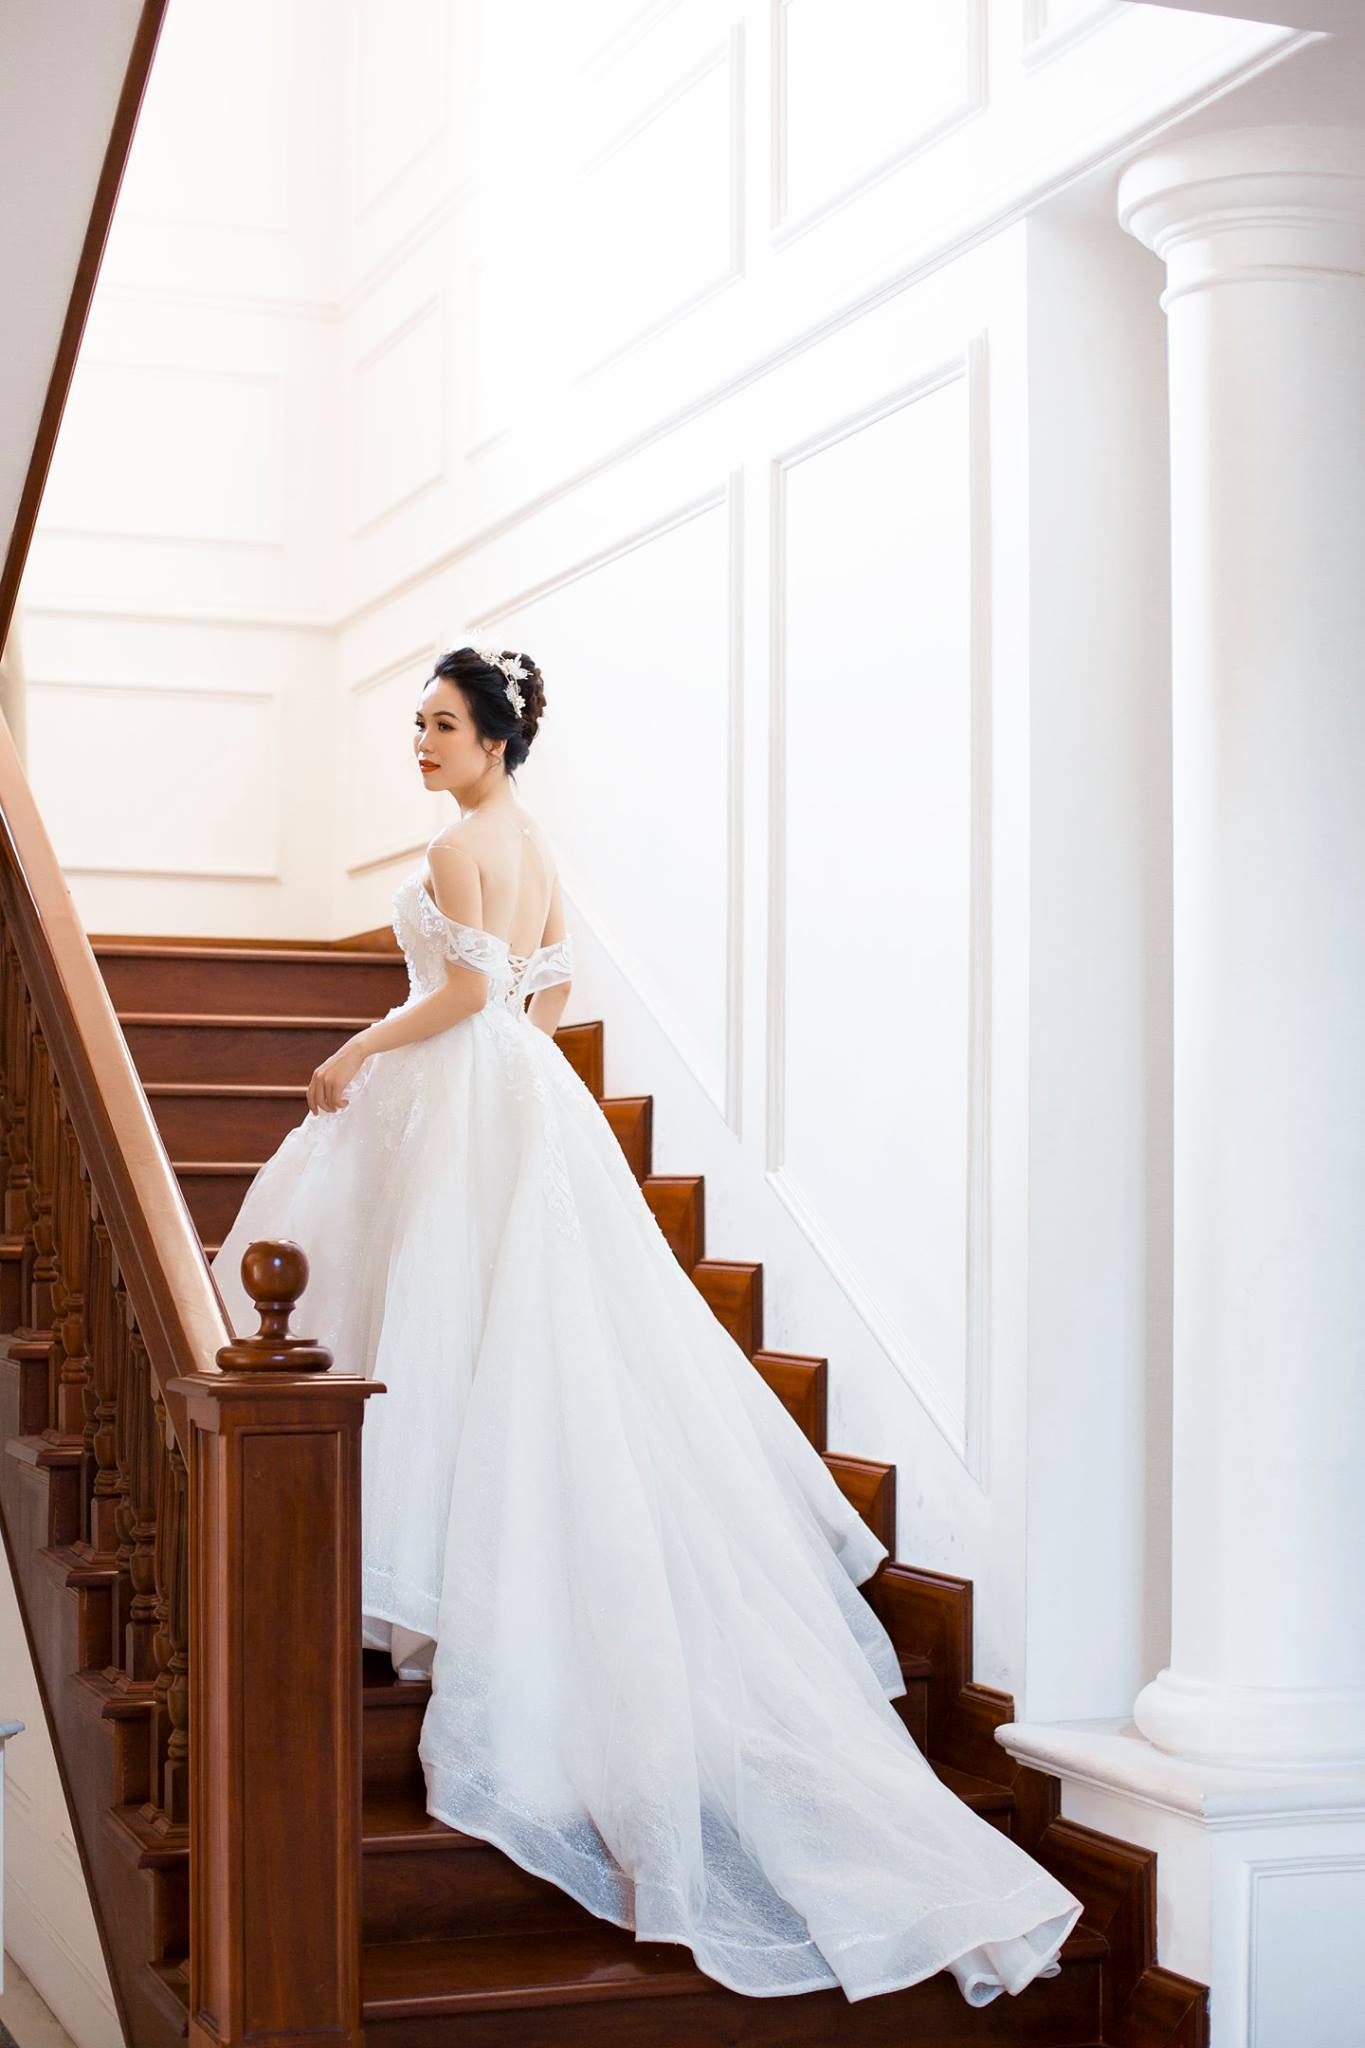 Chụp ảnh cưới tại Hồng Linh Studio-Voucher gói chụp ảnh cưới tại Hà Nội (SIMPLE)